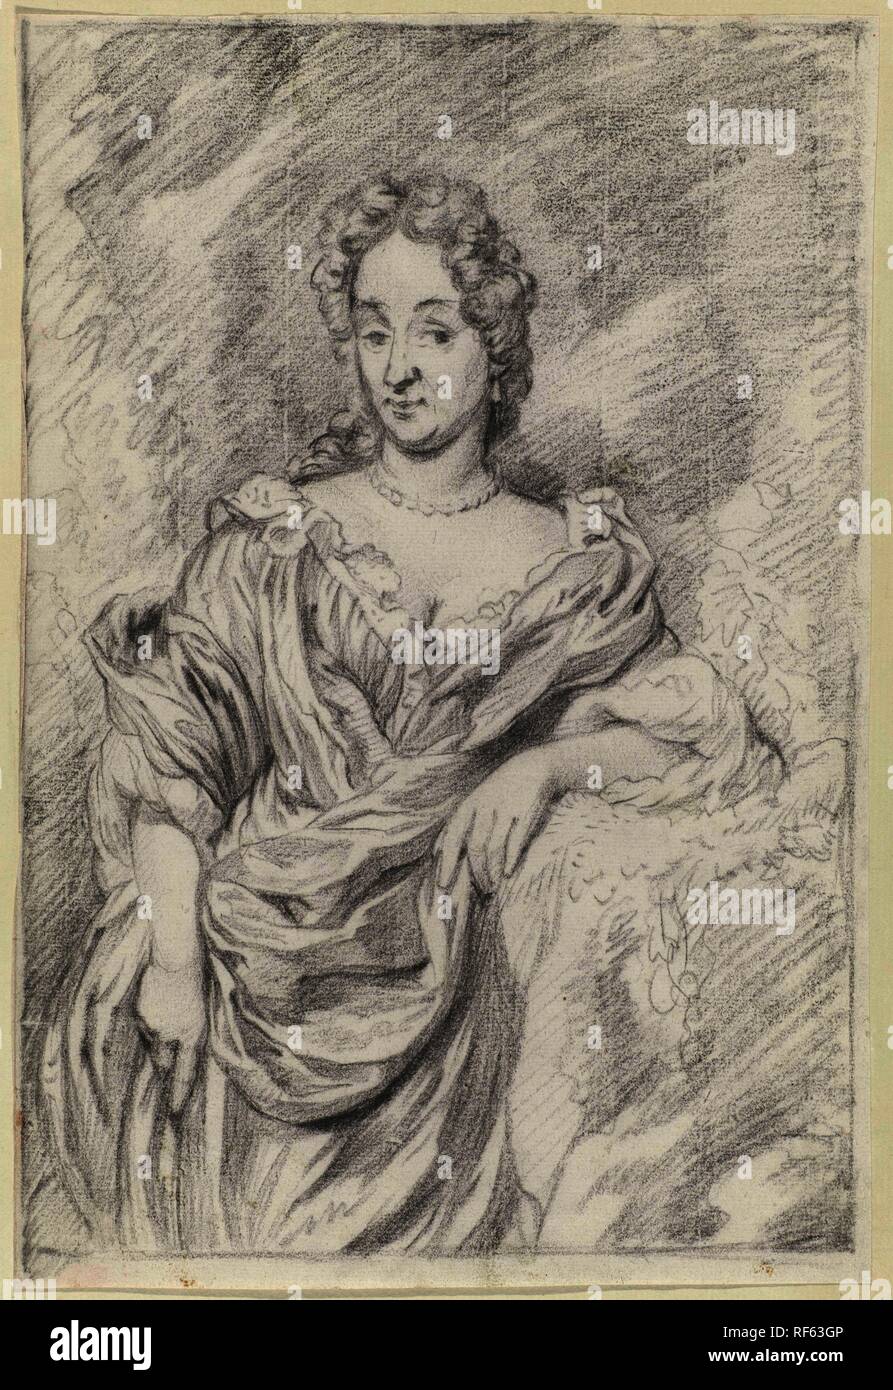 Riccamente vestito donna in piedi. Relatore per parere: anonimo. Dating: c. 1675 - c. 1725. Luogo: Paesi Bassi. Misurazioni: h 293 mm × W 200 mm. Museo: Rijksmuseum Amsterdam. Foto Stock